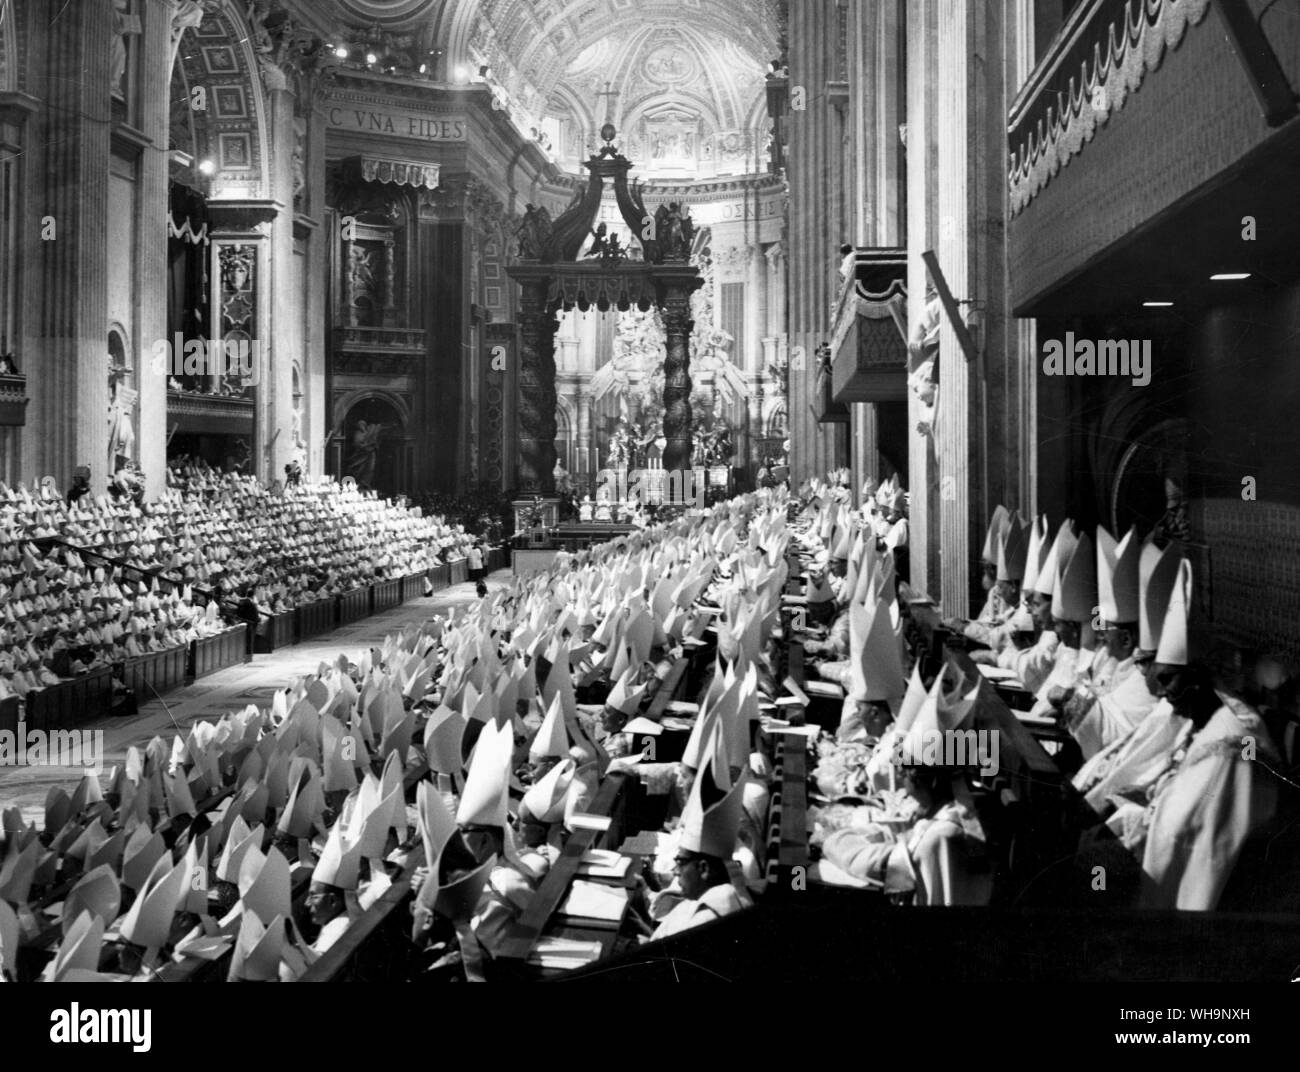 11 Octobre 1962 : Cérémonie d'ouverture du Concile Vatican ii dans la Basilique Saint-Pierre. Près de 3000 évêques présents. Banque D'Images